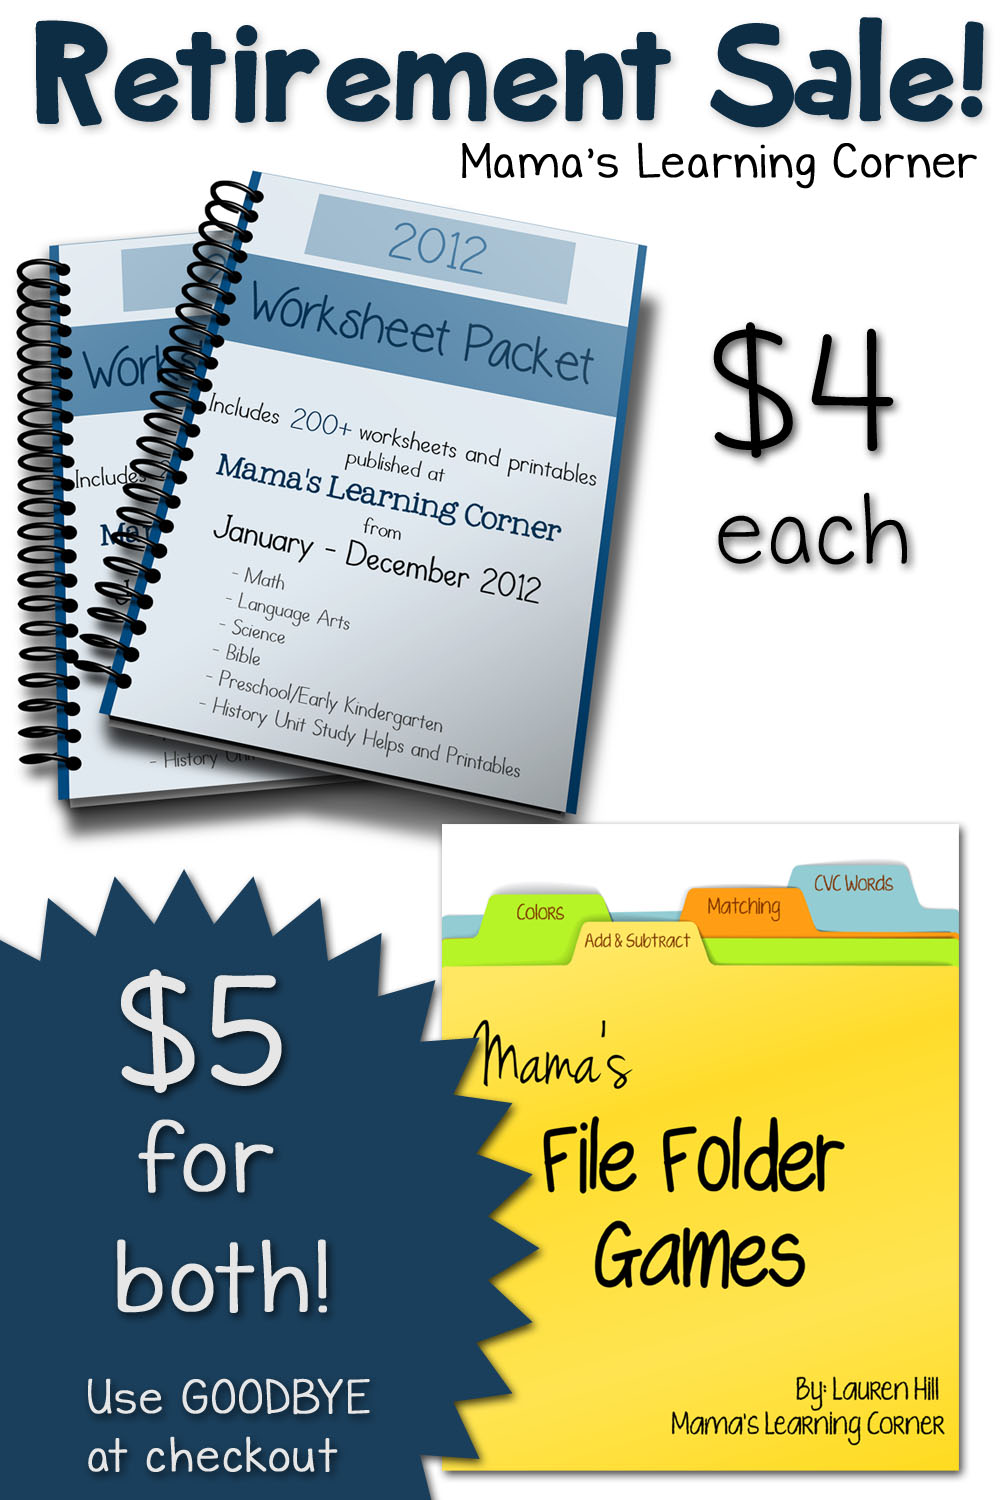 Retirement Sale - 2012 Worksheet Packet and File Folder Games